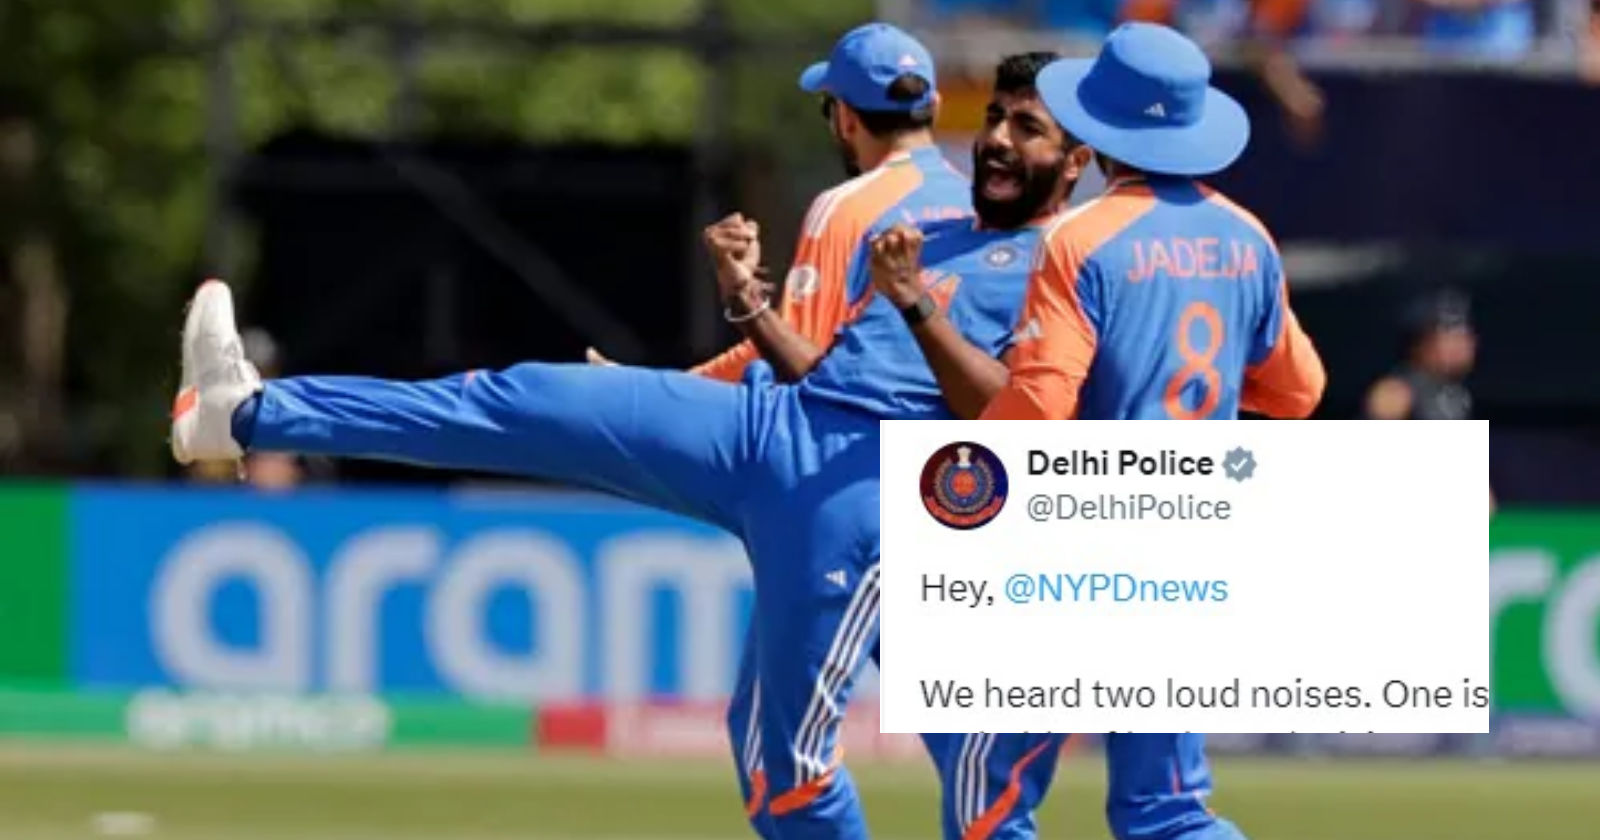 Delhi Police039s Hilarious Tweet After India039s Win Over Pakistan in